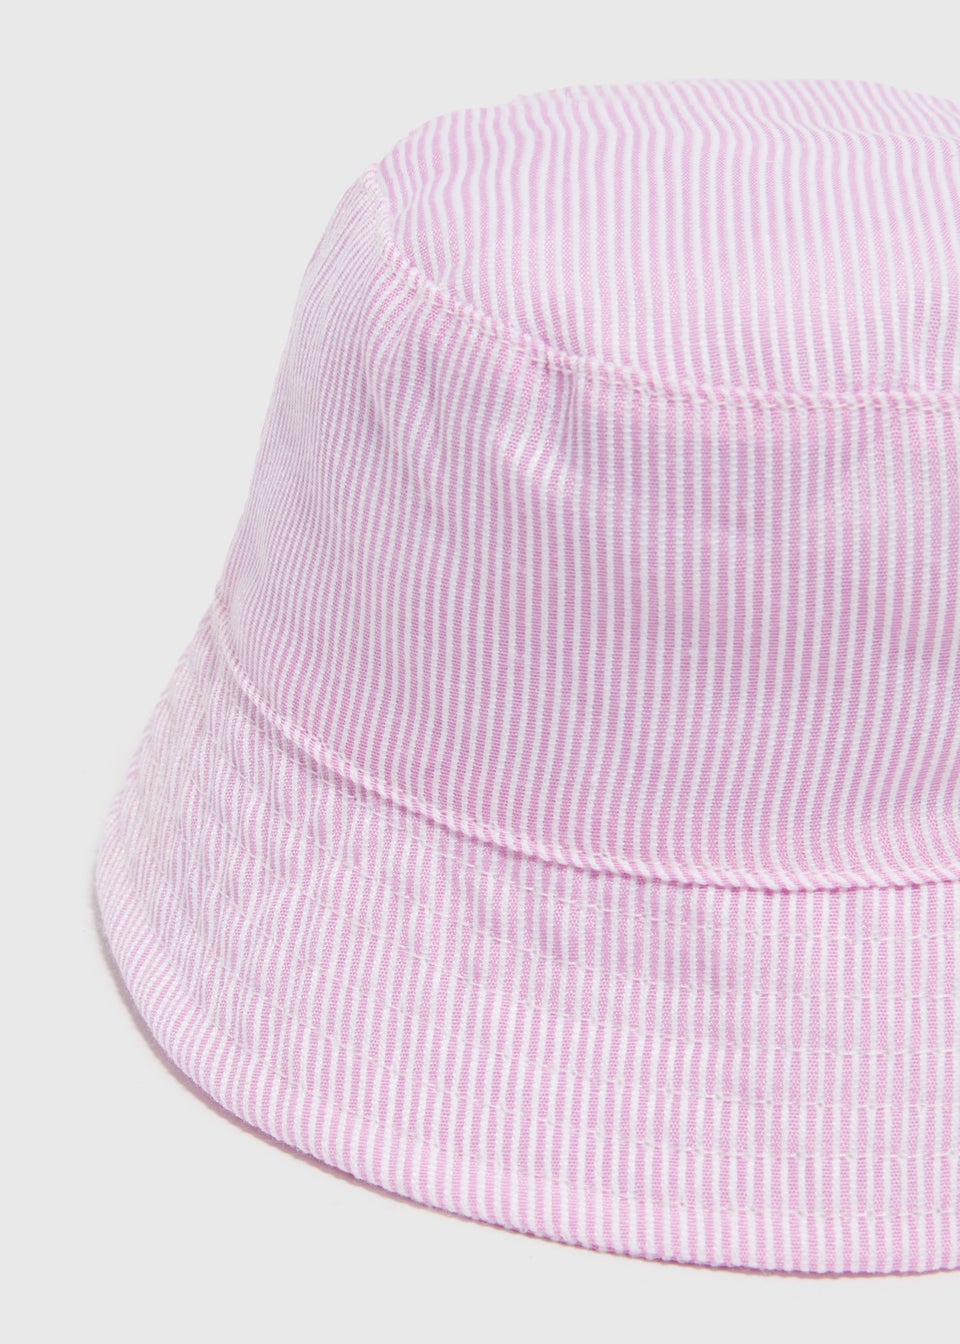 Baby Pink Stripe Bucket Hat (Newborn-24mths)